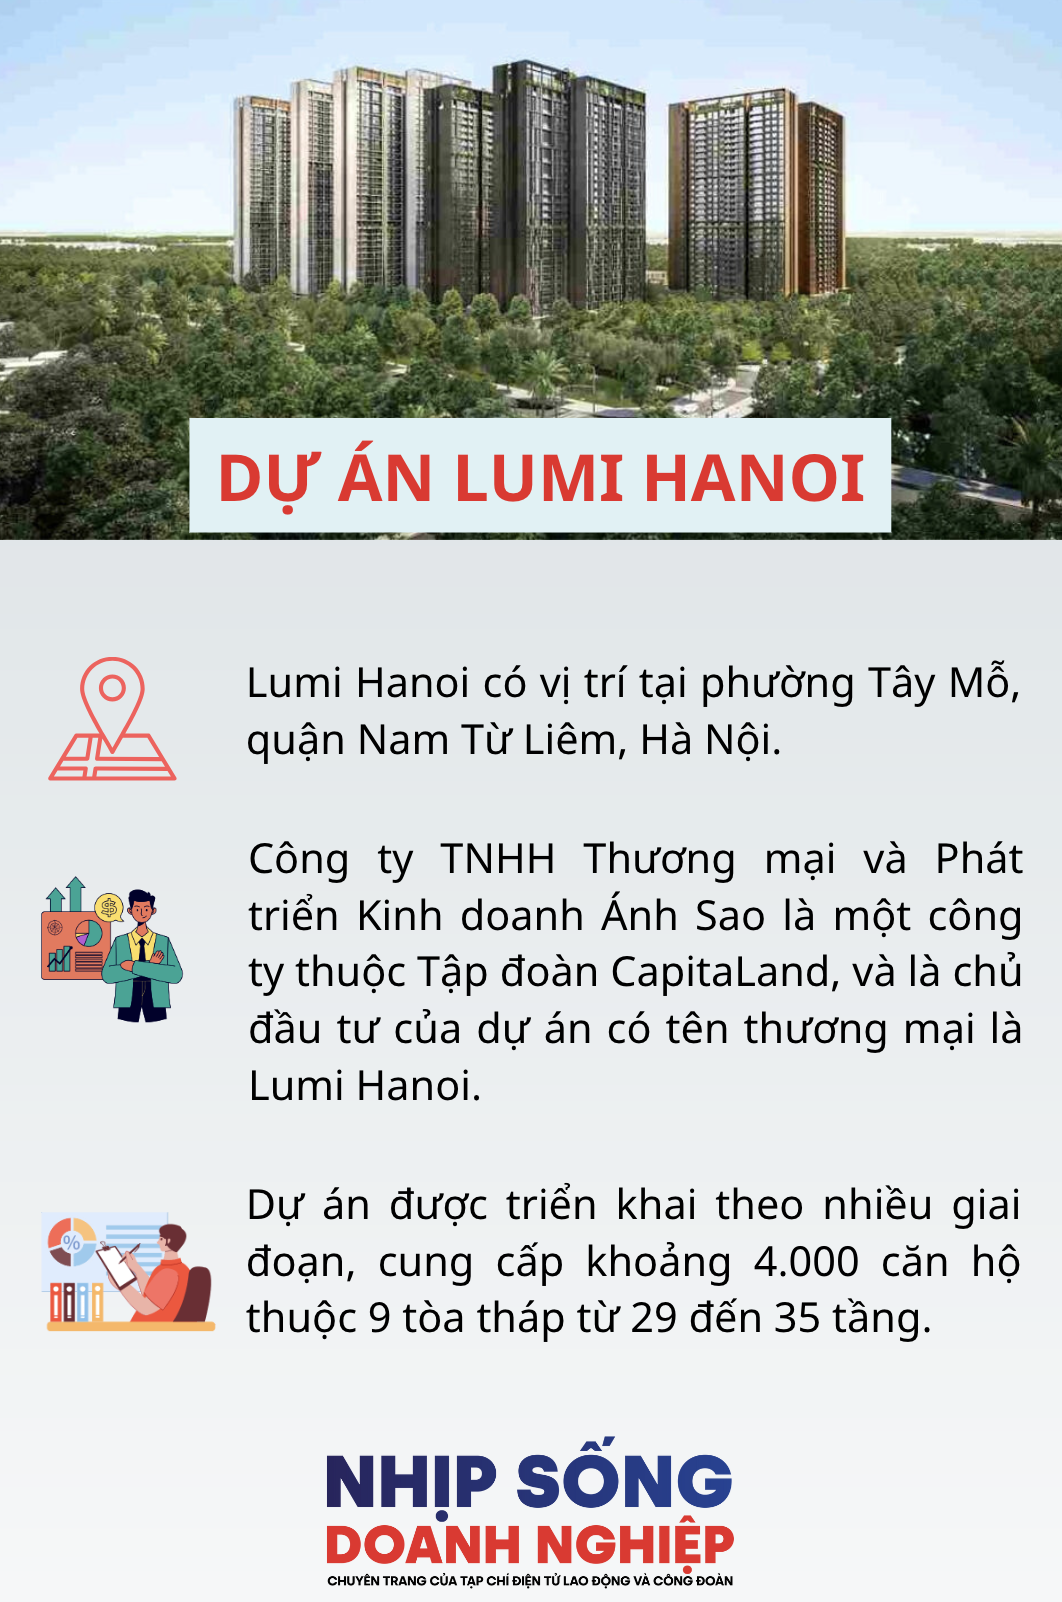 Thành lập đoàn kiểm tra việc huy động vốn không đúng tại dự án Lumi Hanoi